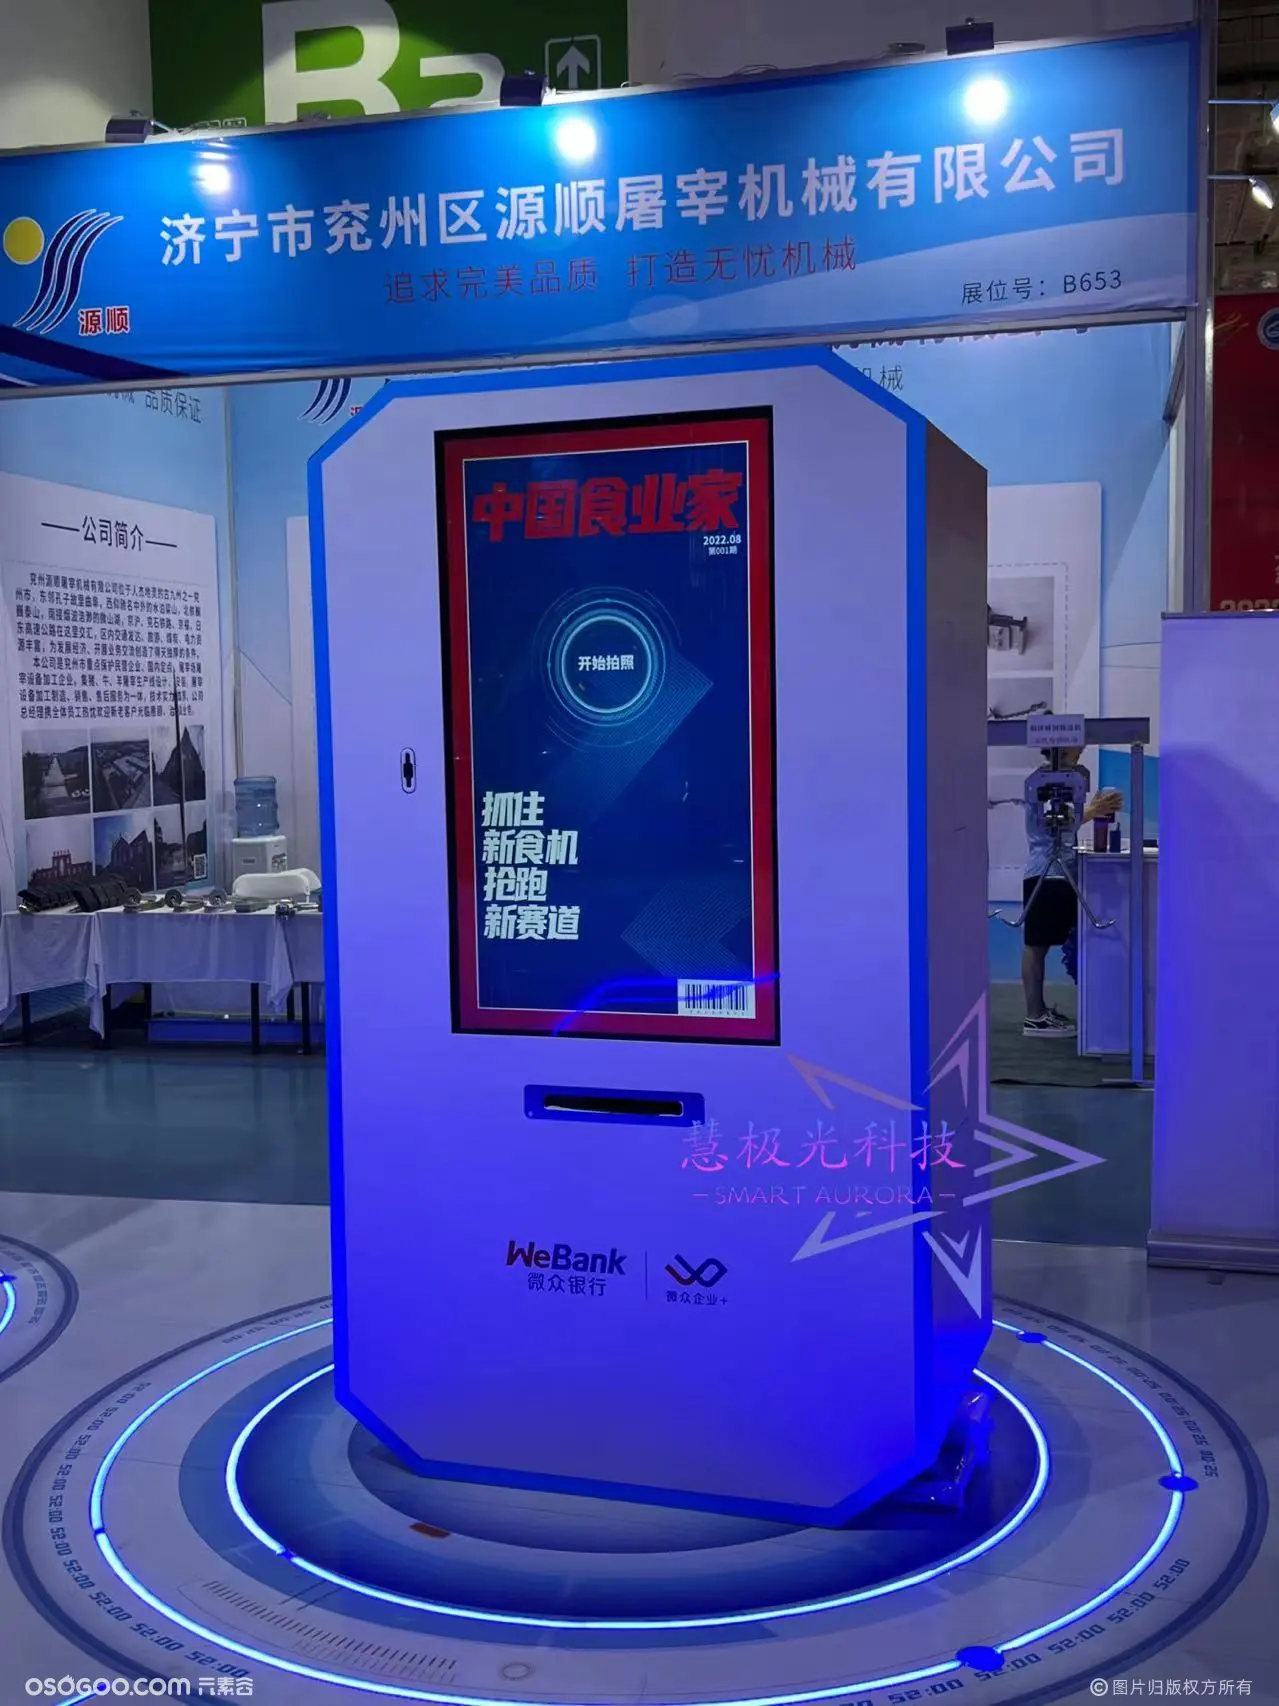 济南国际展览会微众银行策划方案活动暖场互动装置